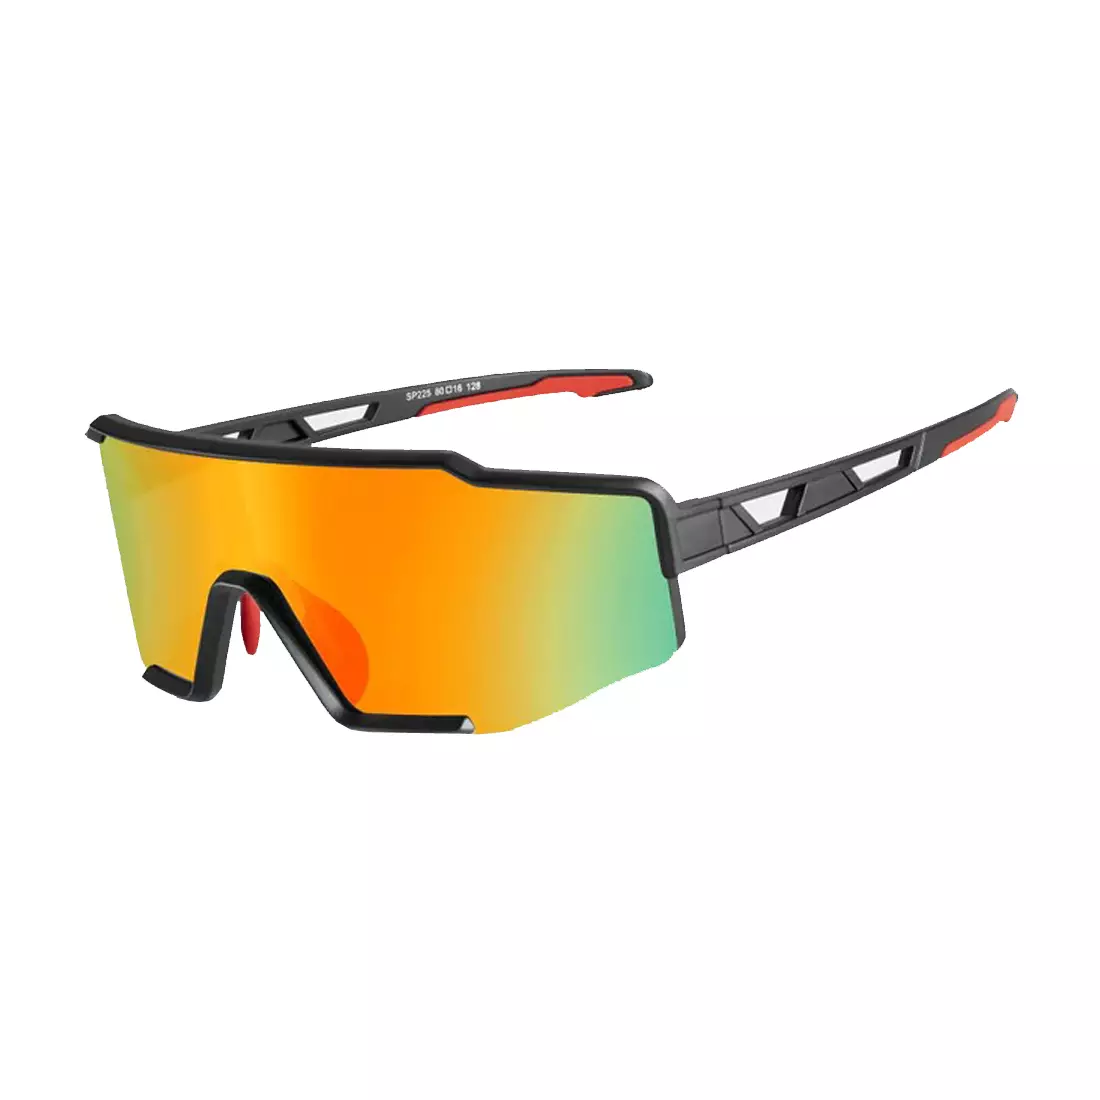 Rockbros SP225BK Fahrrad / Sportbrille mit polarisiertem schwarz-grau